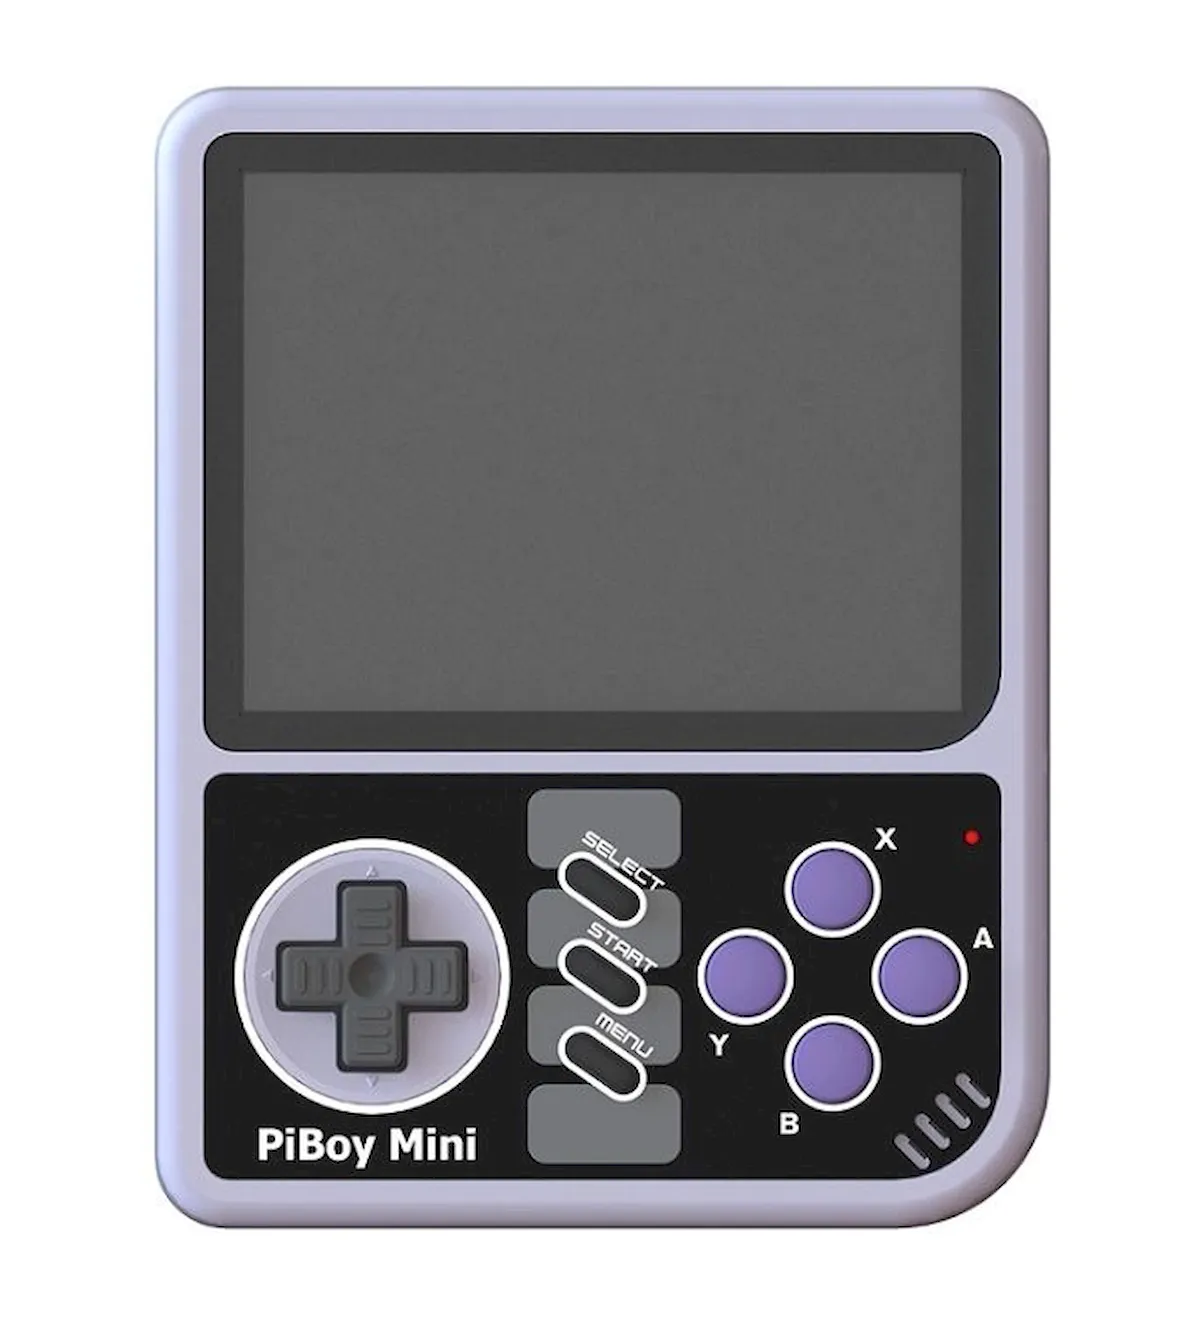 PiBoy Mini transforma um RPi Zero em um console de jogos retrô